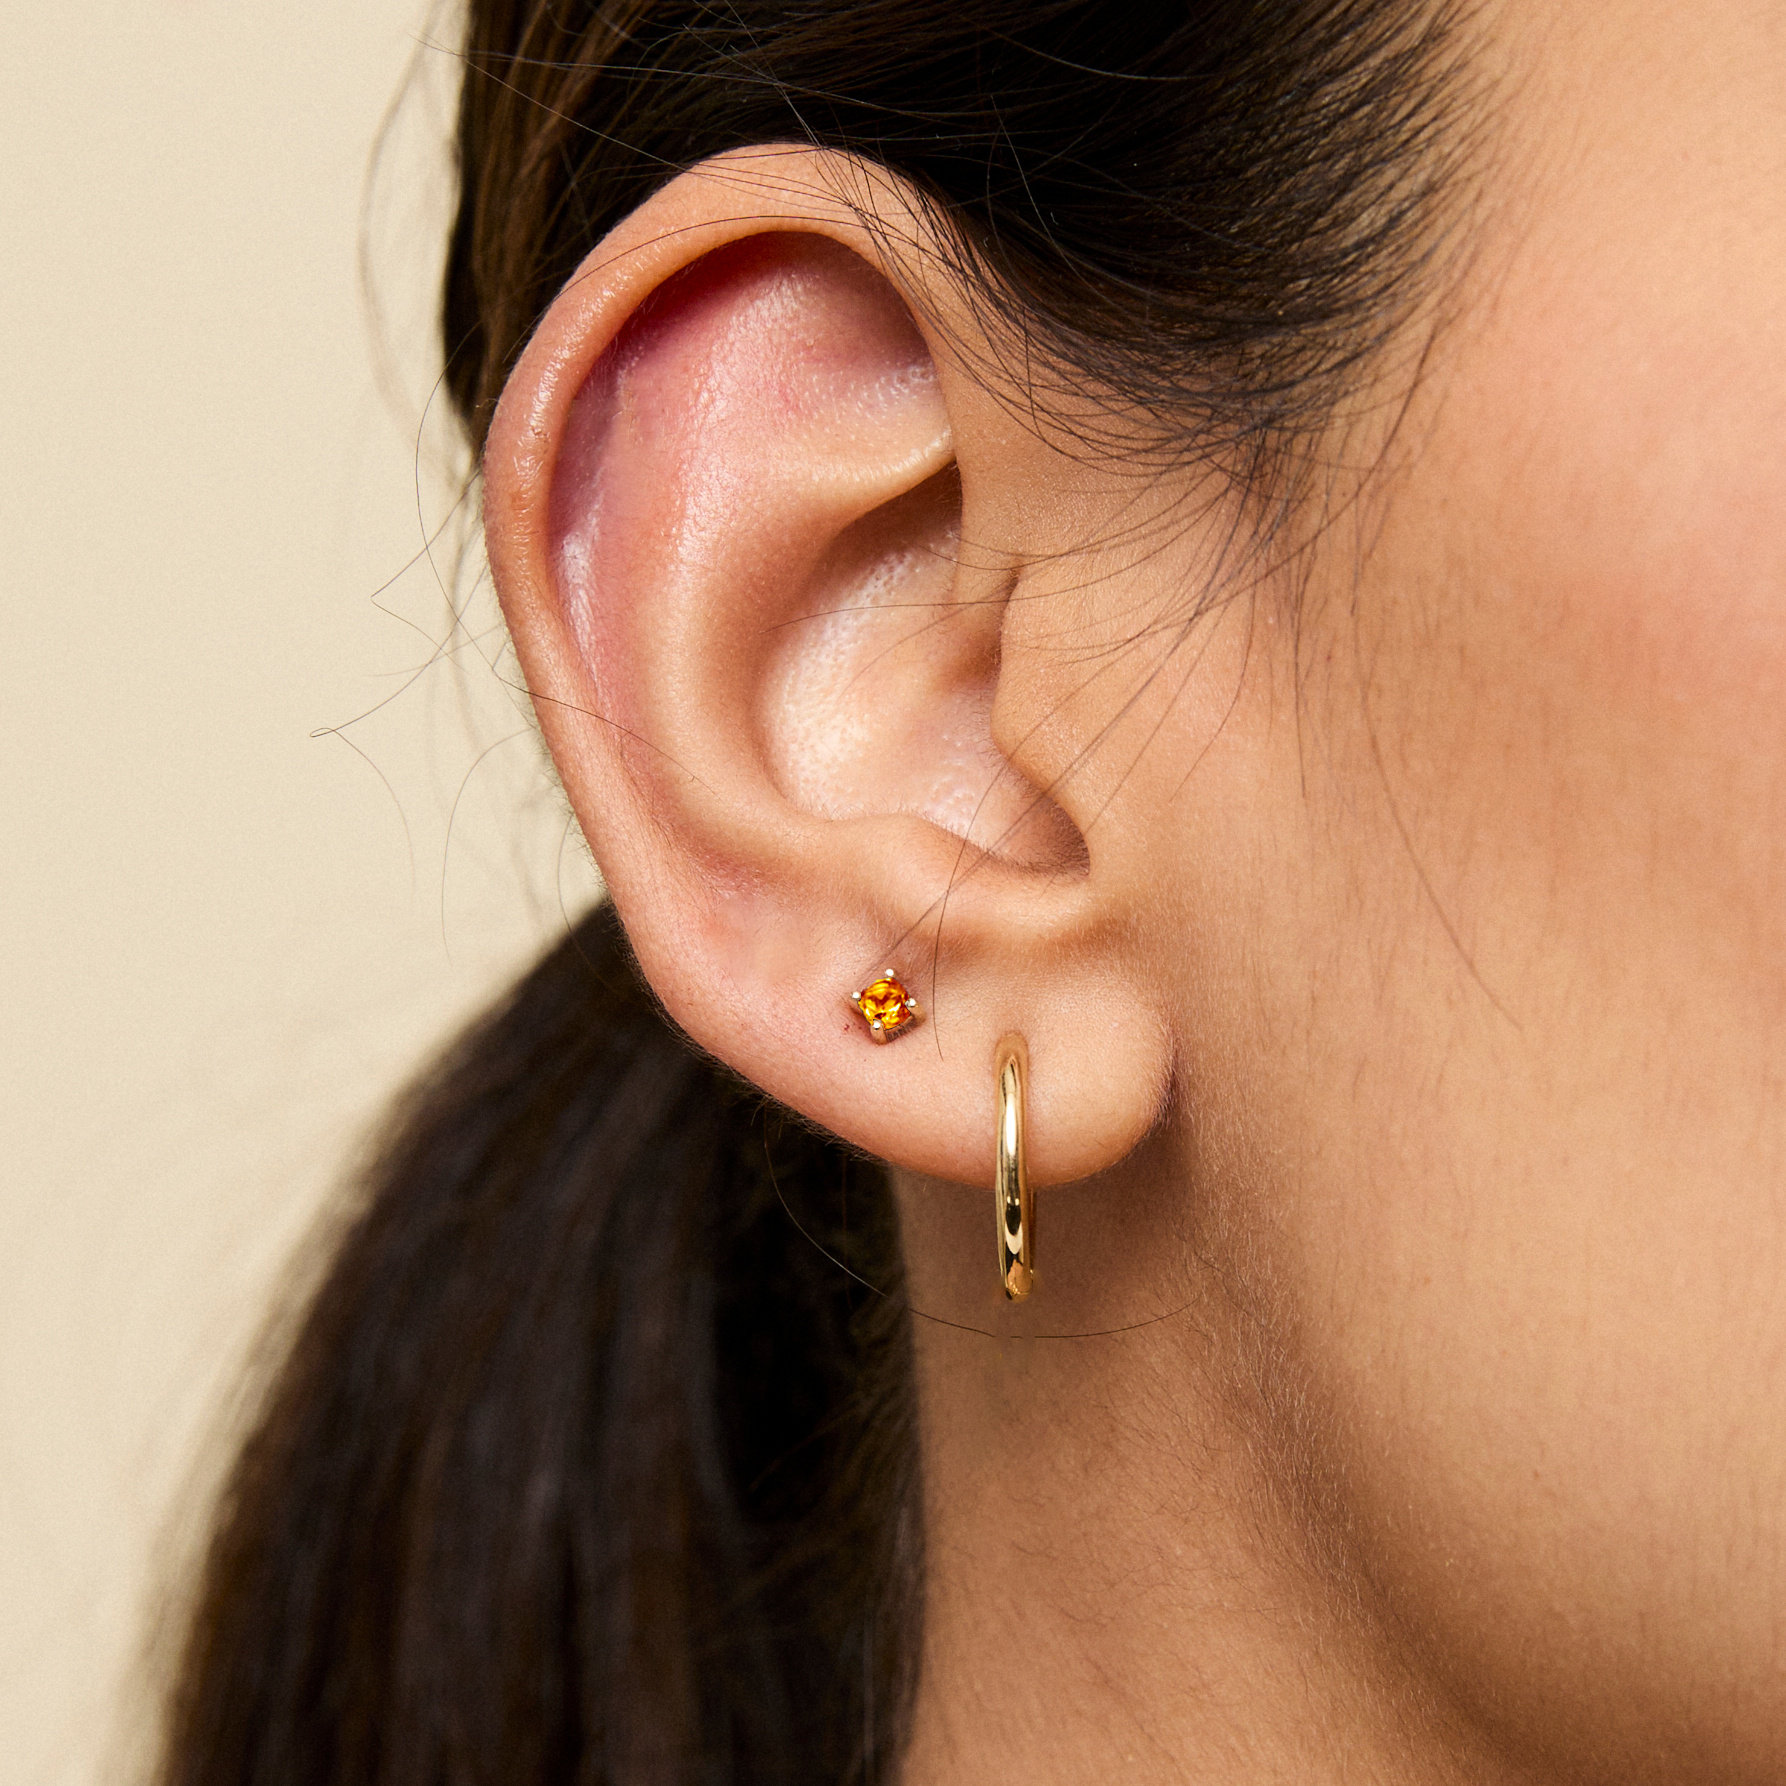 DEAL! 0.75ctw Natural Cluster Diamond Flower Studs Earrings 14K Gold 7mm |  eBay